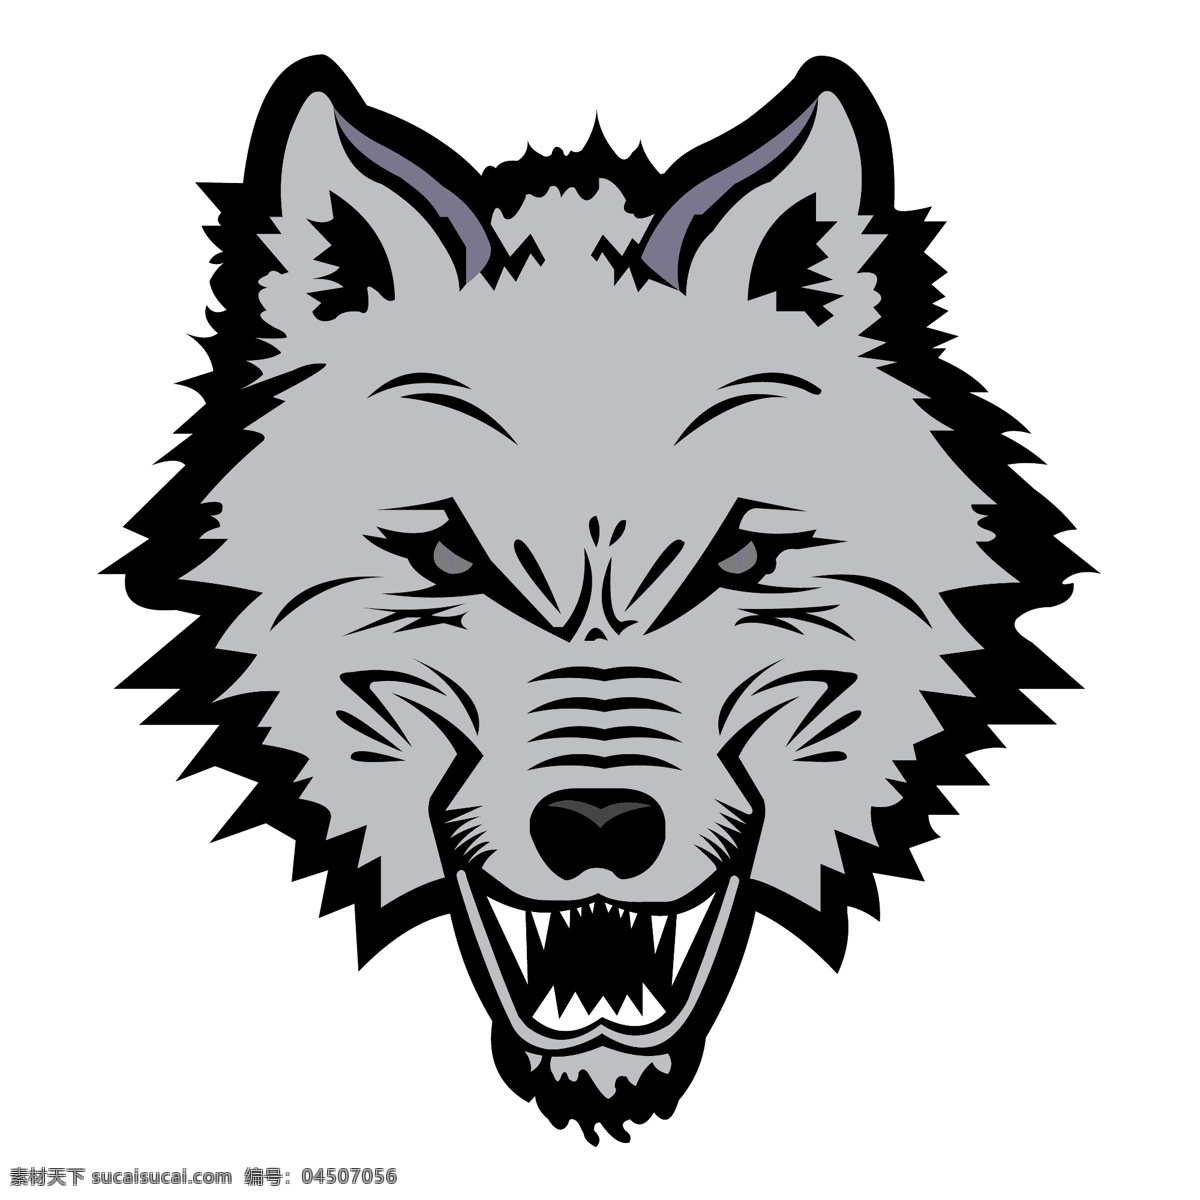 新英格兰 海狼 标识 公司 免费 品牌 品牌标识 商标 矢量标志下载 免费矢量标识 矢量